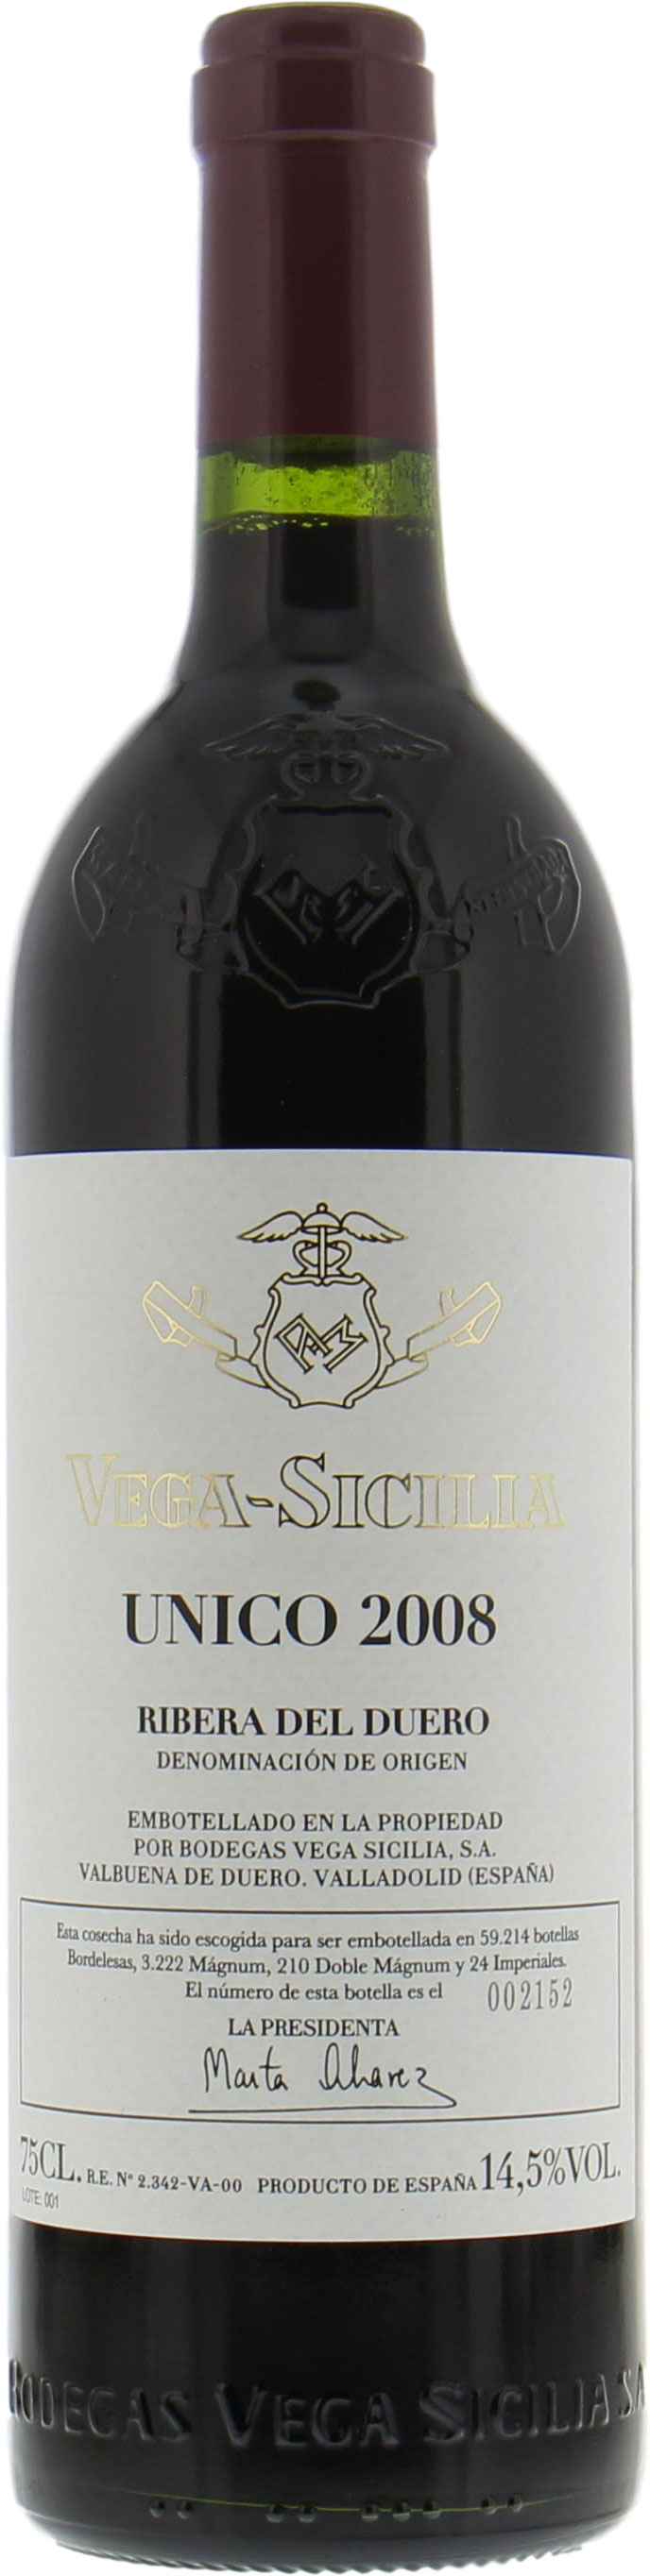 Vega Sicilia - Unico 2008 Perfect